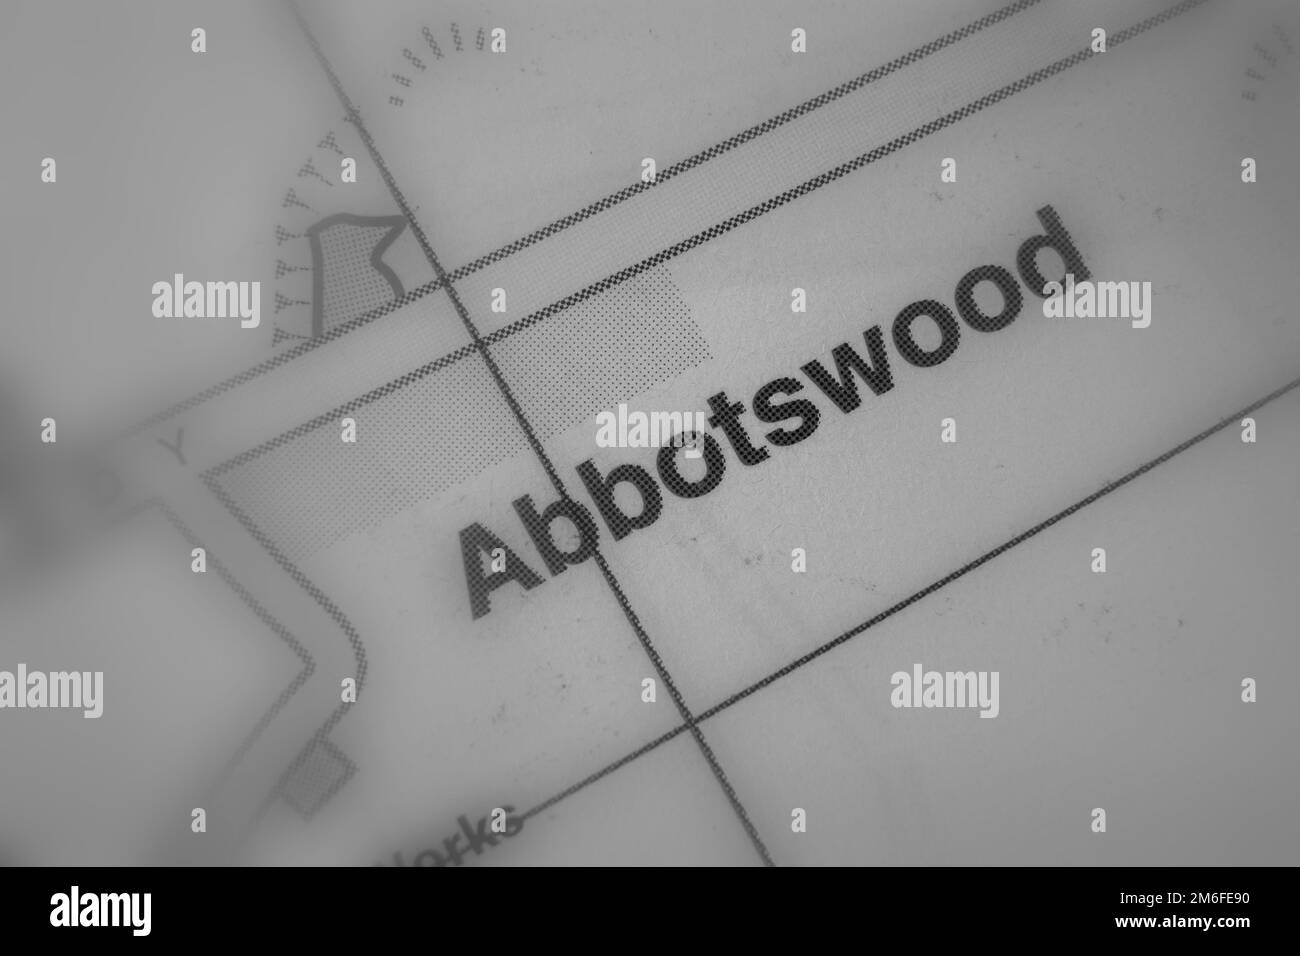 Abbotswood village, Hampshire, Reino Unido atlas mapa nombre de la ciudad - blanco y negro tilt-shift Foto de stock